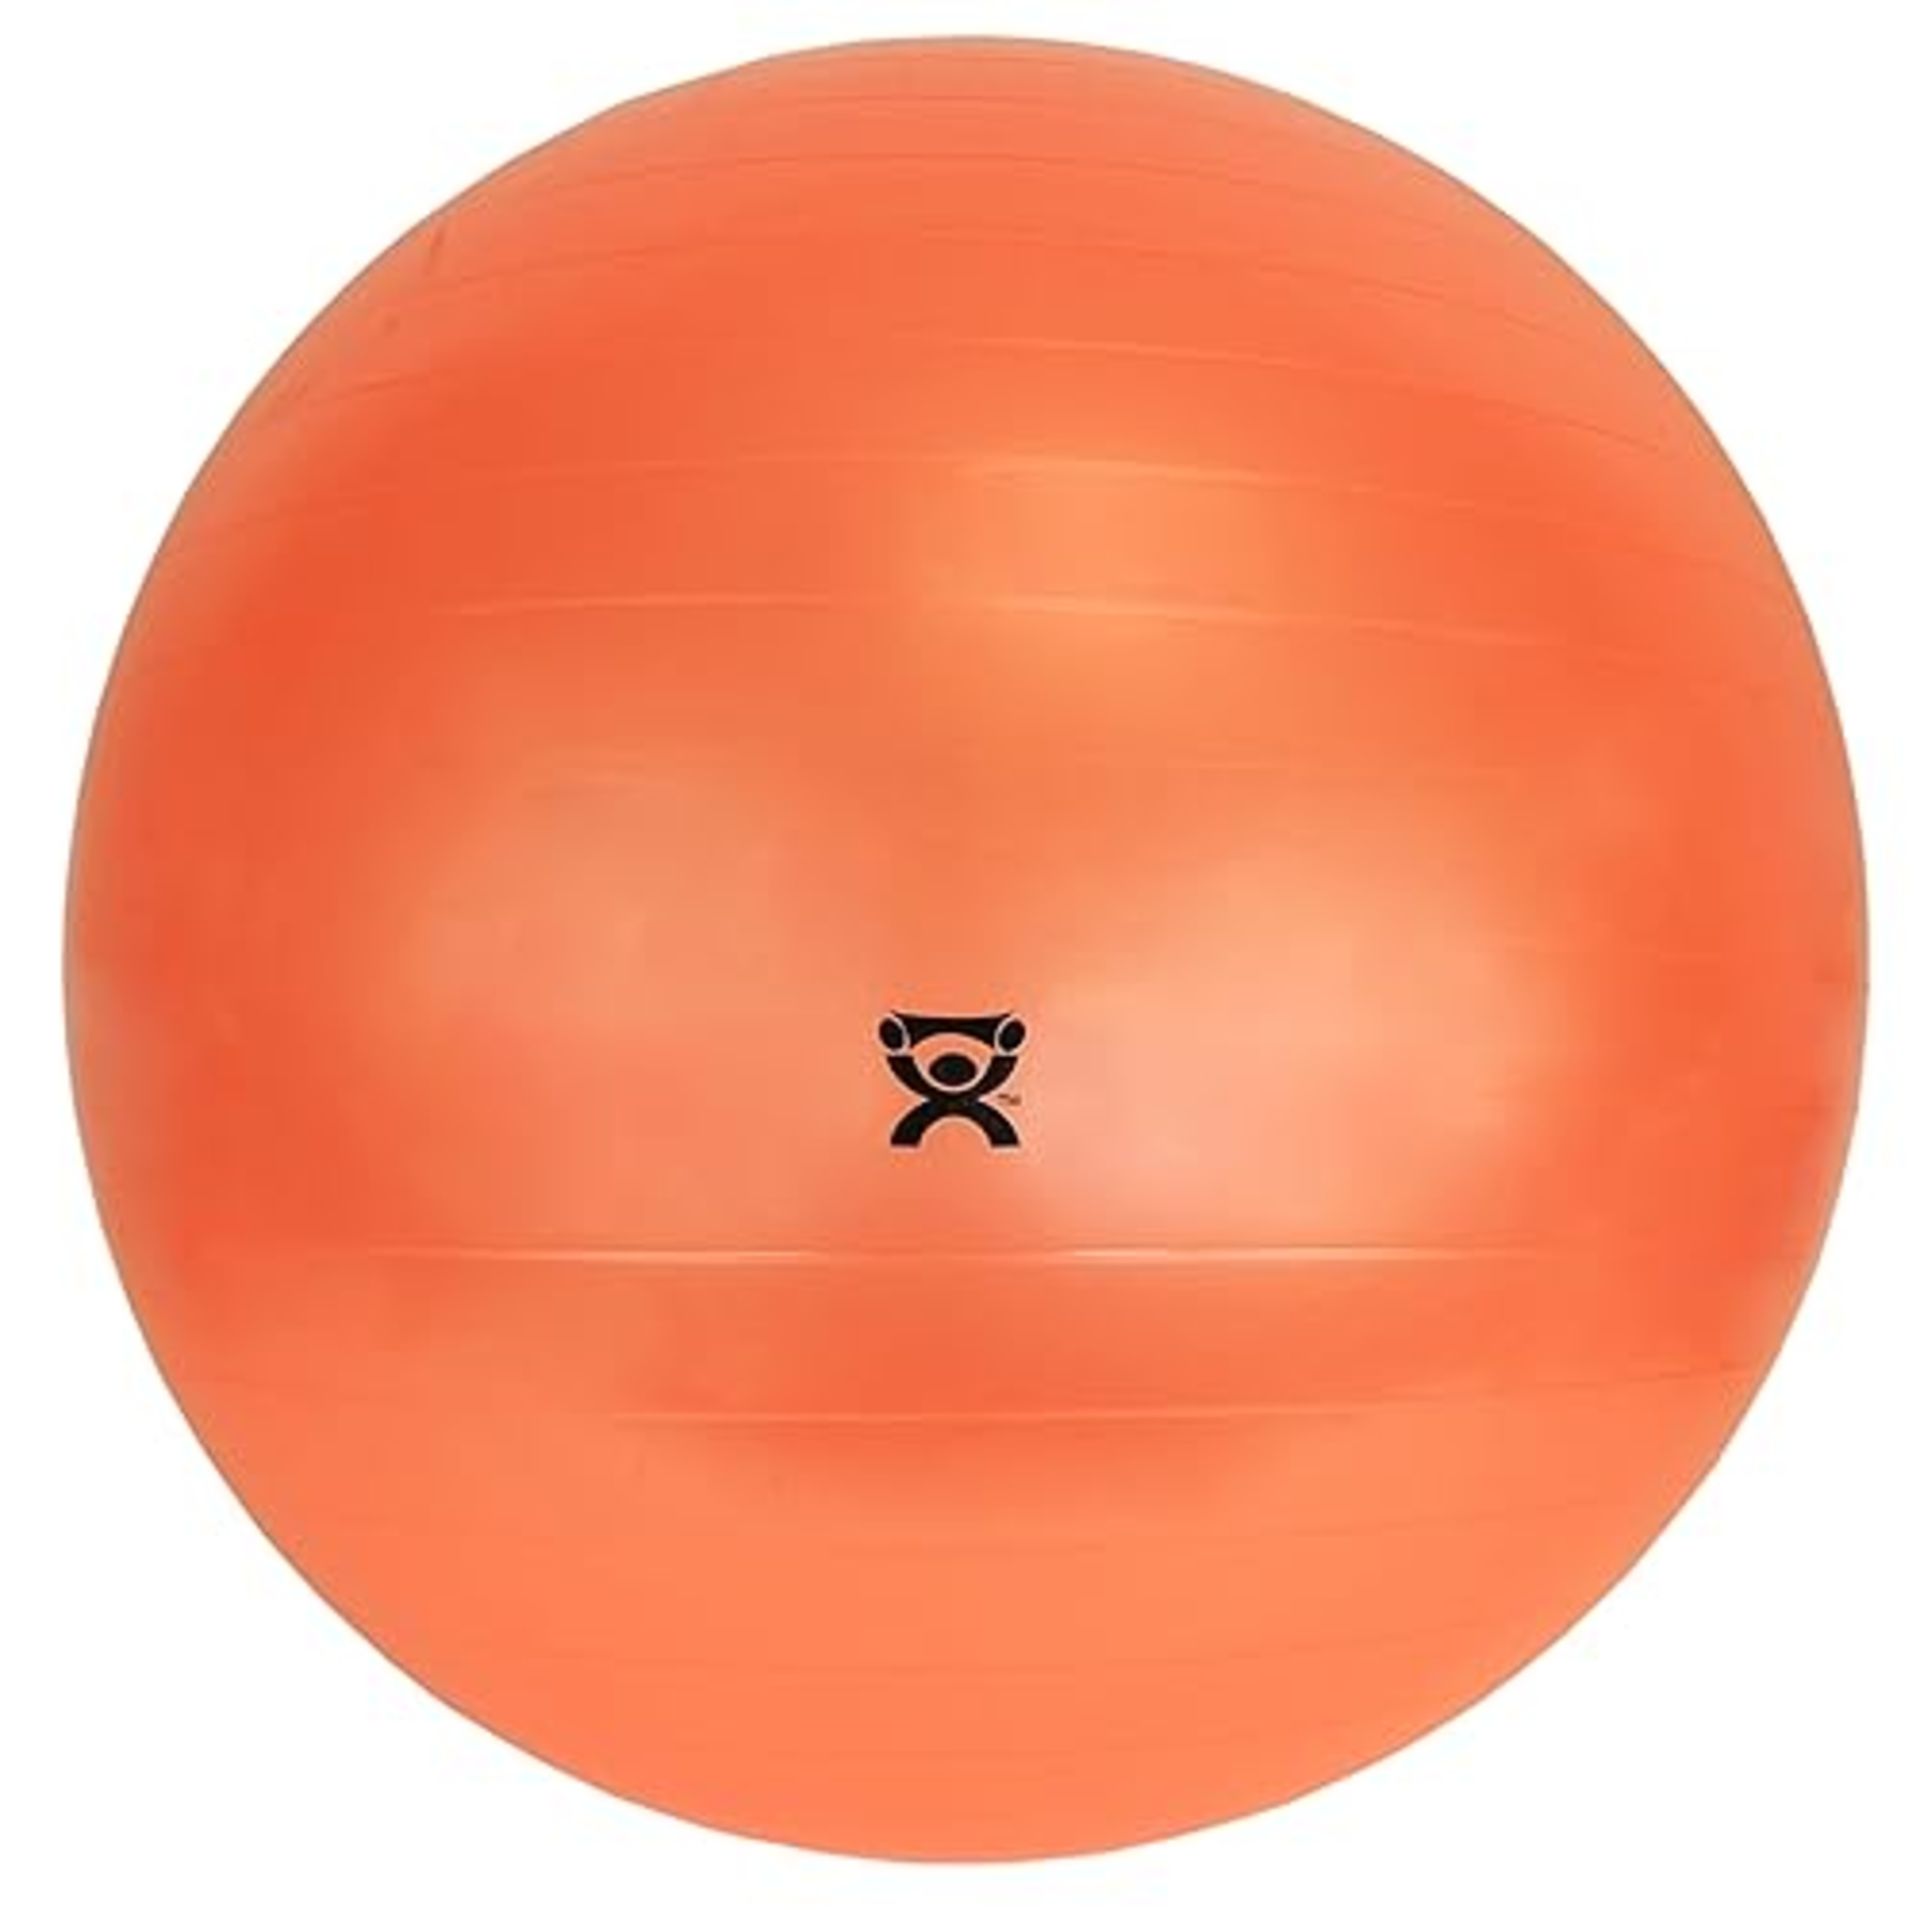 CanDo Exercise Ball, non-slip, inflatable, orange, 120cm